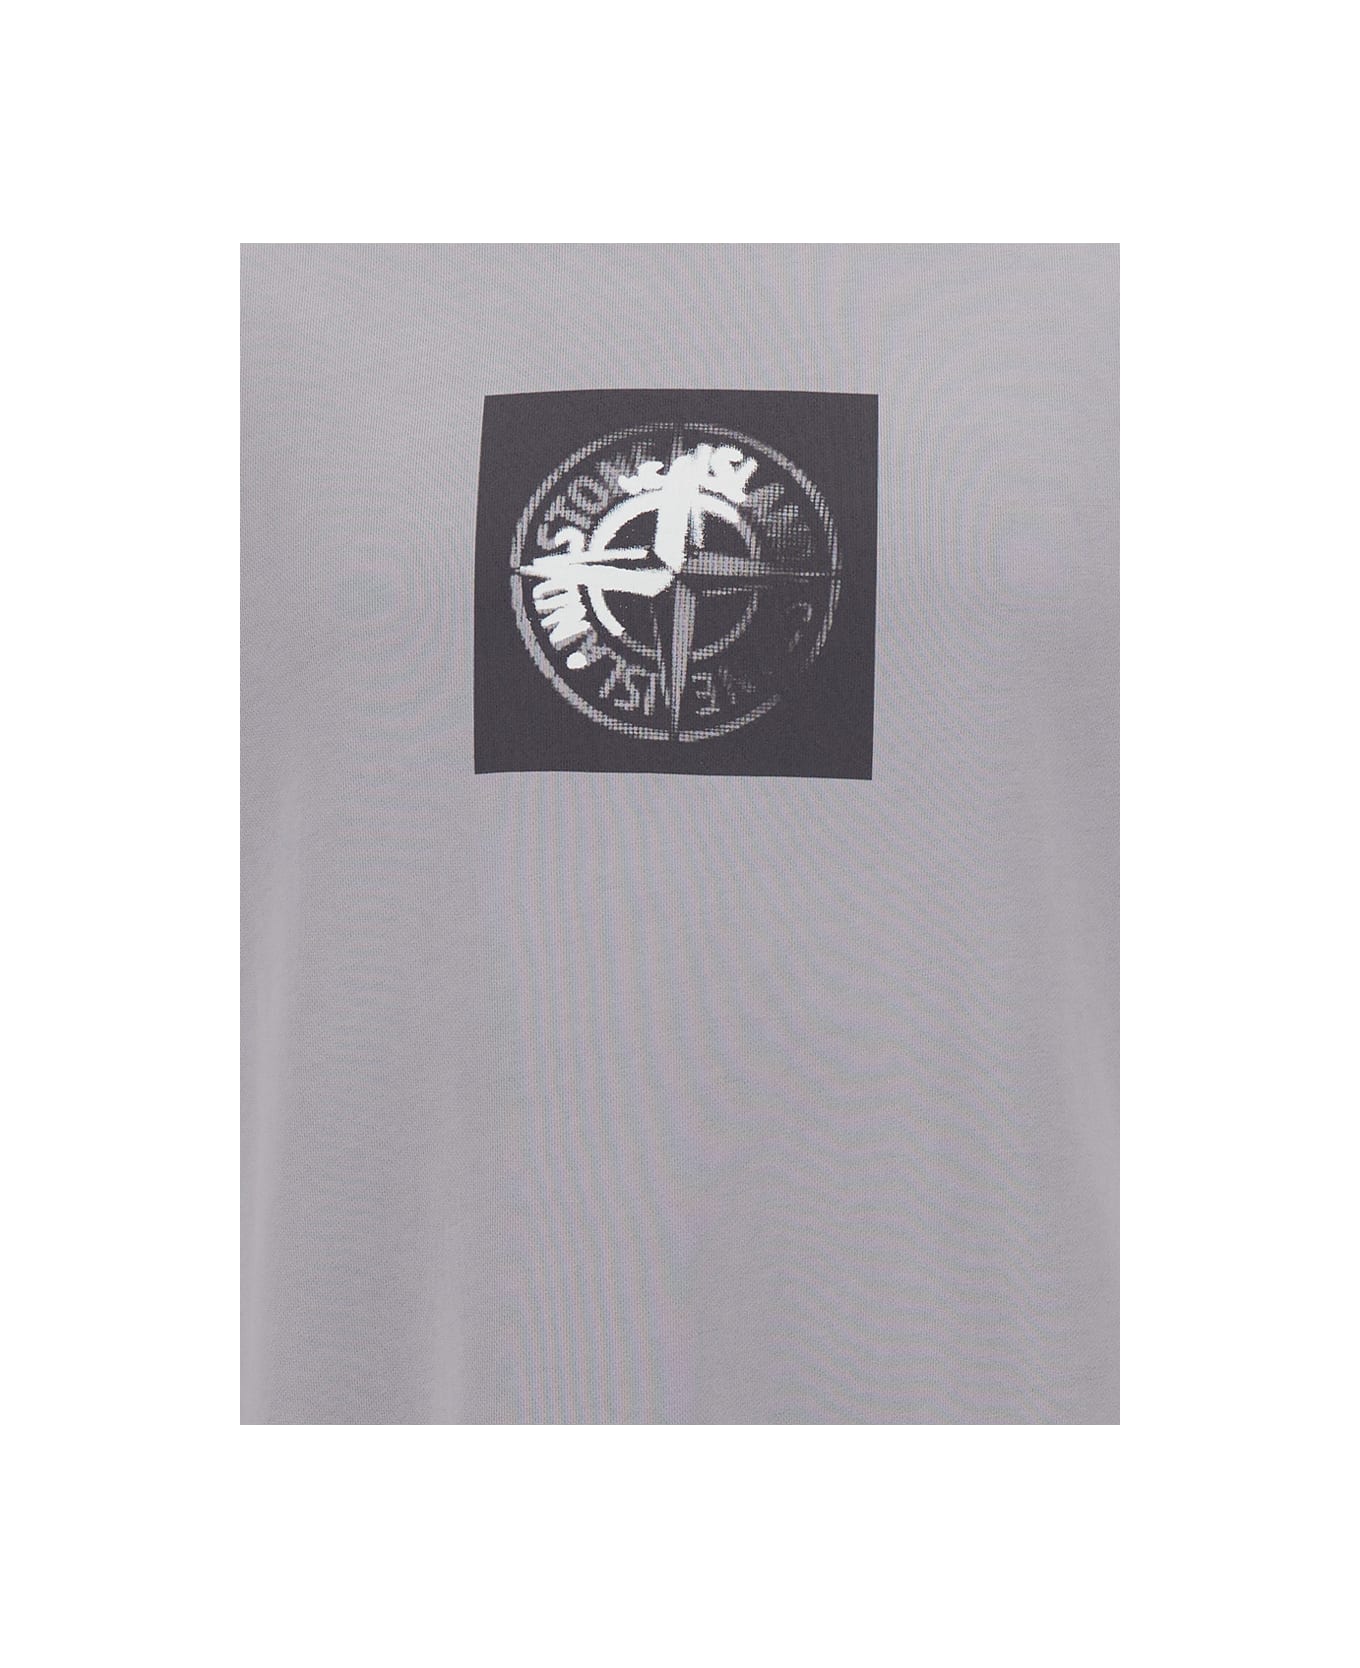 Stone Island Grey Crewneck Sweatshirt With Logo Print In Cotton Man - Grey フリース